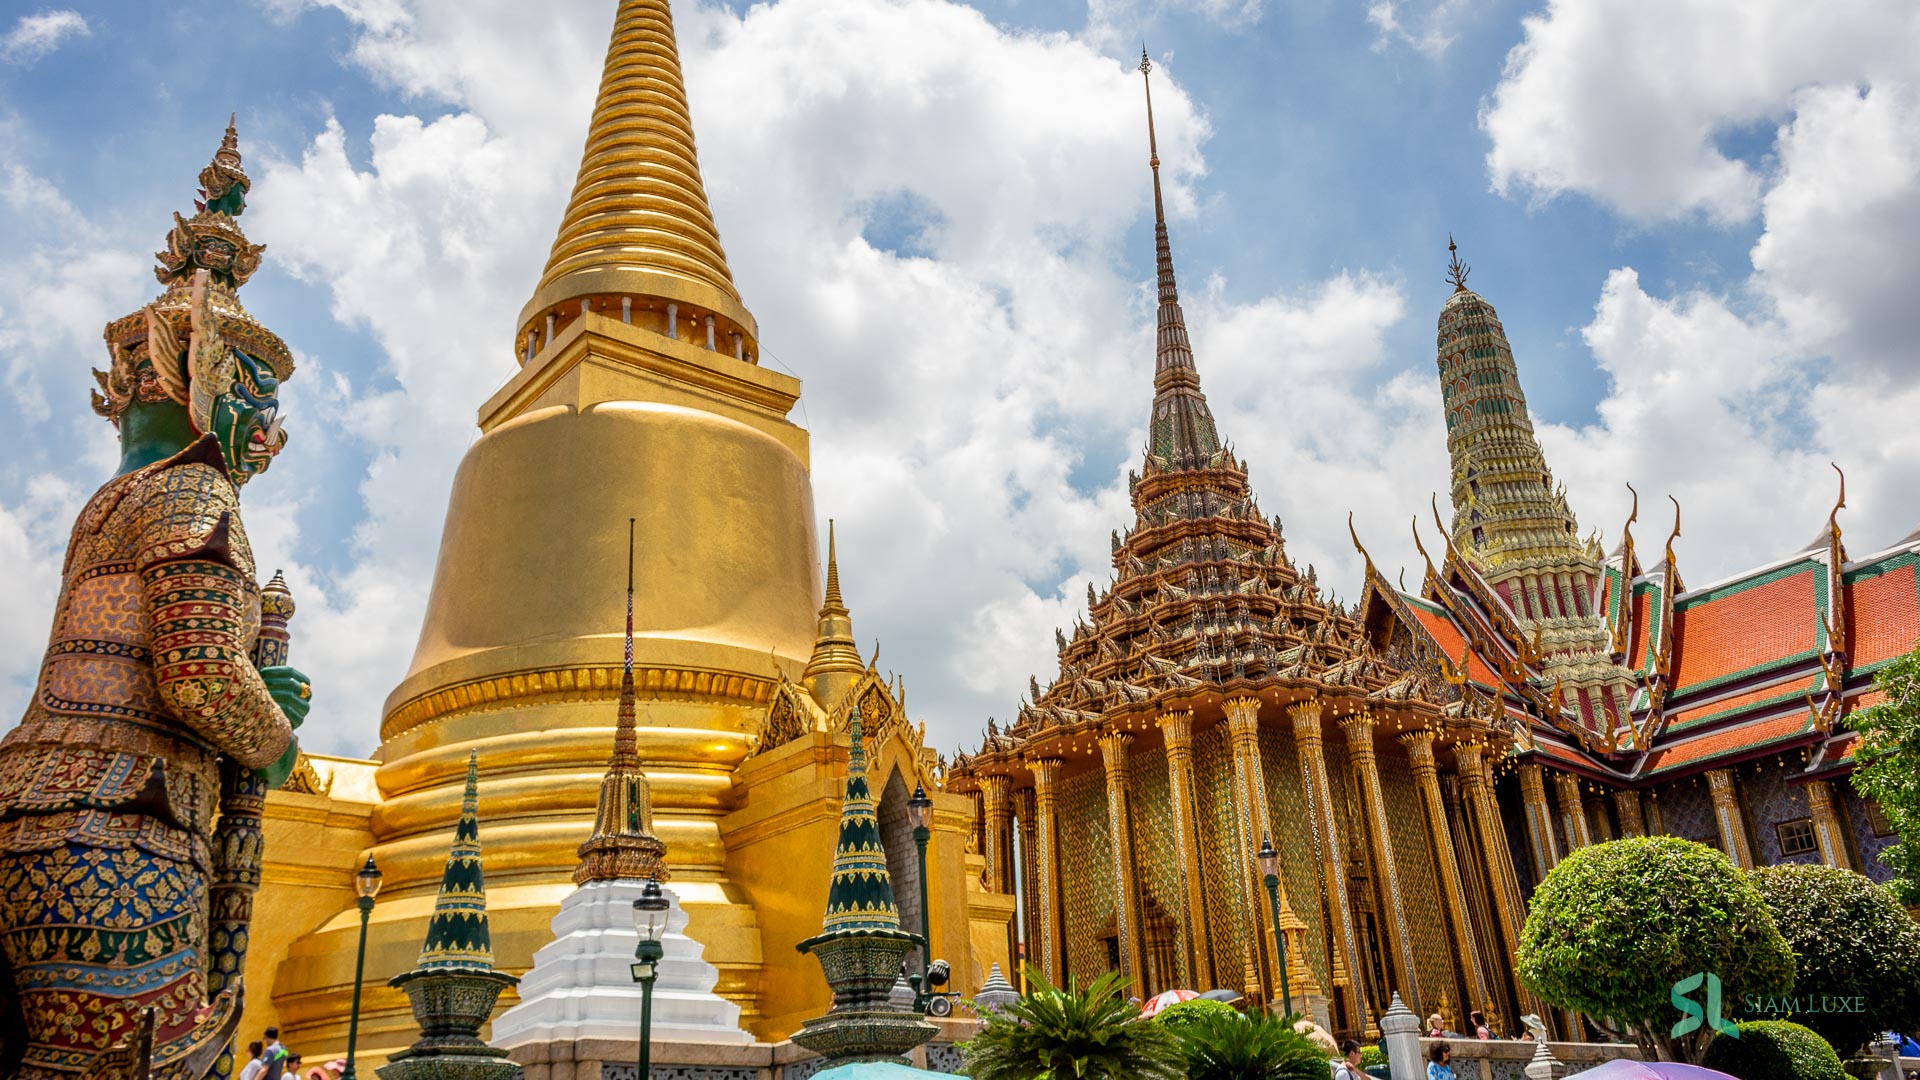 The magnificient Royal Grand Palace in Bangkok